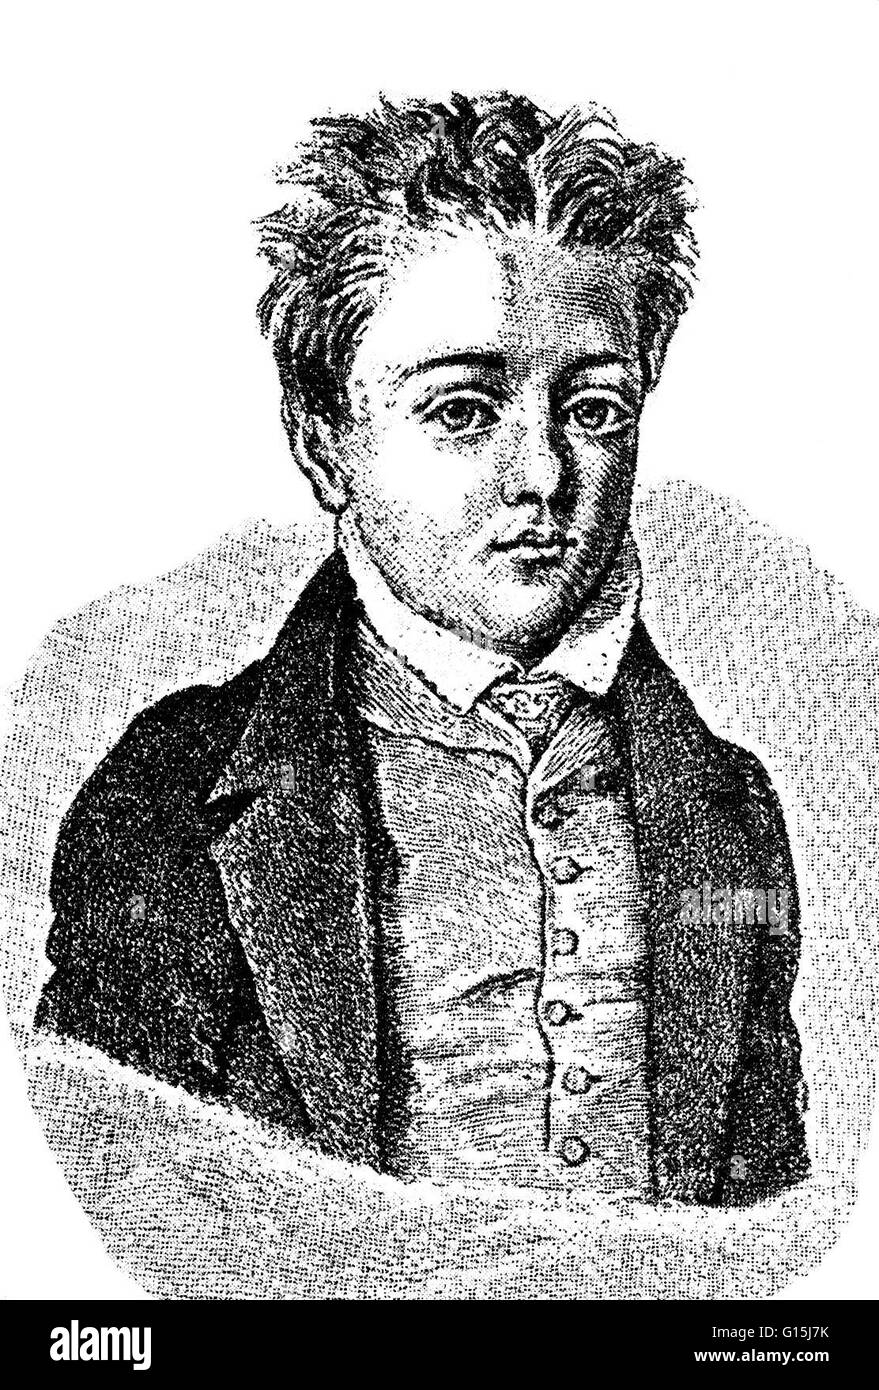 Kupferstich von Flaubert, 10 Jahre alt. Gustave Flaubert (12. Dezember 1821 - 8. Mai 1880) war ein einflussreicher französischer Schriftsteller, der vielleicht der bedeutendste Vertreter des literarischen Realismus seines Landes war. Er besuchte das Lycée Pierre Corneille und un nicht verlassen Stockfoto